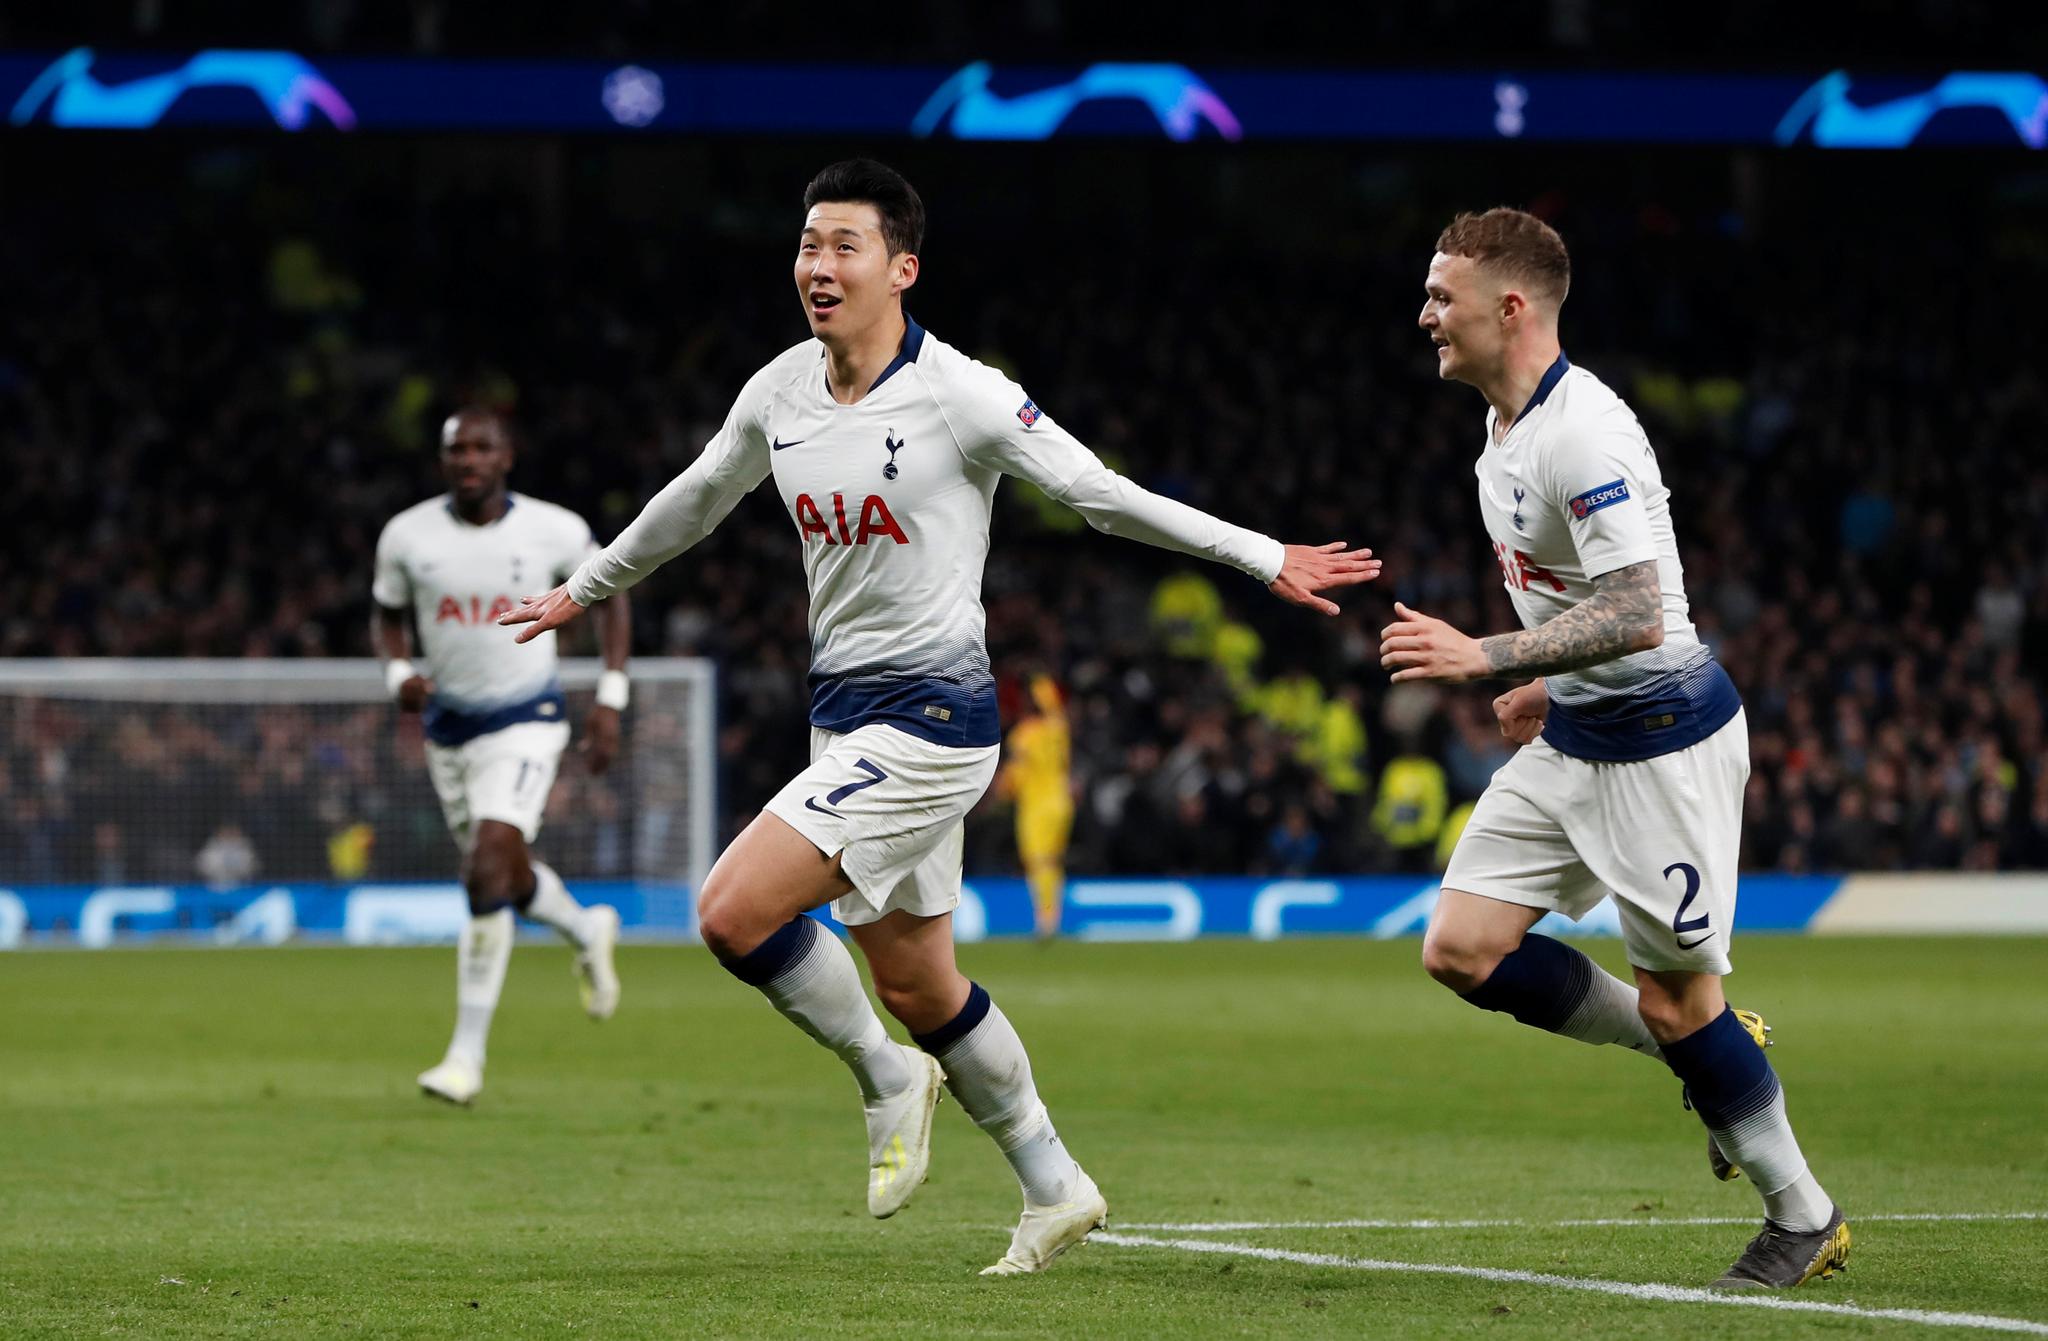 Son Heung-min, Kieran Tripper og de andre Tottenham-spillerne håper å sikre mesterligaplass også neste år. Enten gjennom ligaen, eller gjennom å vinne hele turneringen. Her feirer Son klubbens scoring i første kvartfinalekamp mot Manchester City.